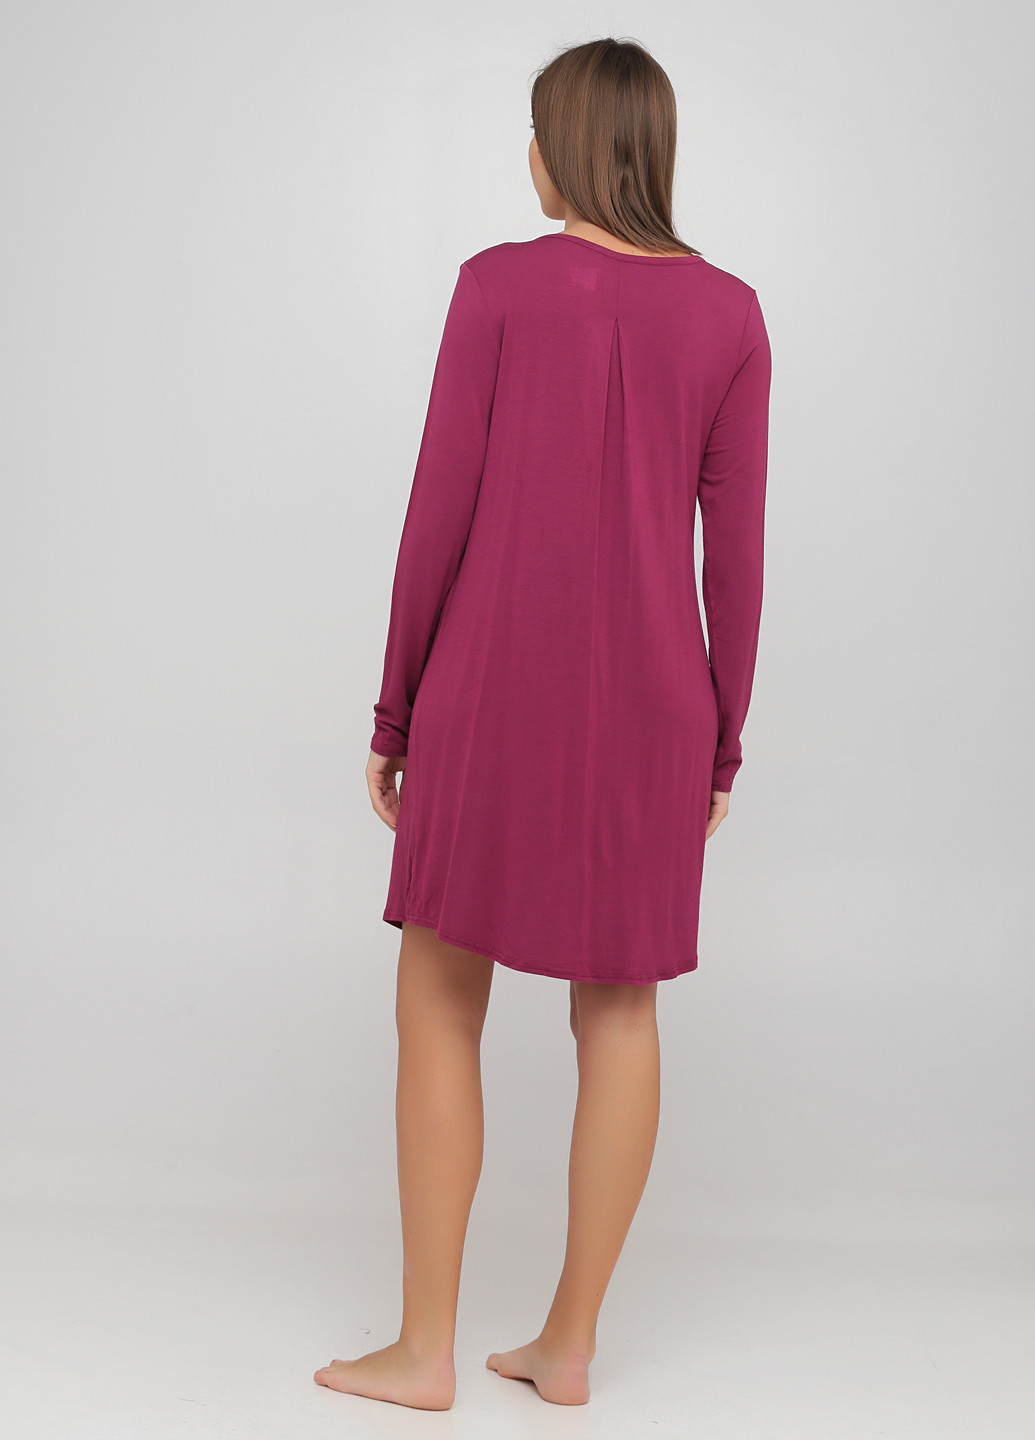 Фуксиновое (цвета Фуксия) домашнее платье Gilligan & O'Malley однотонное